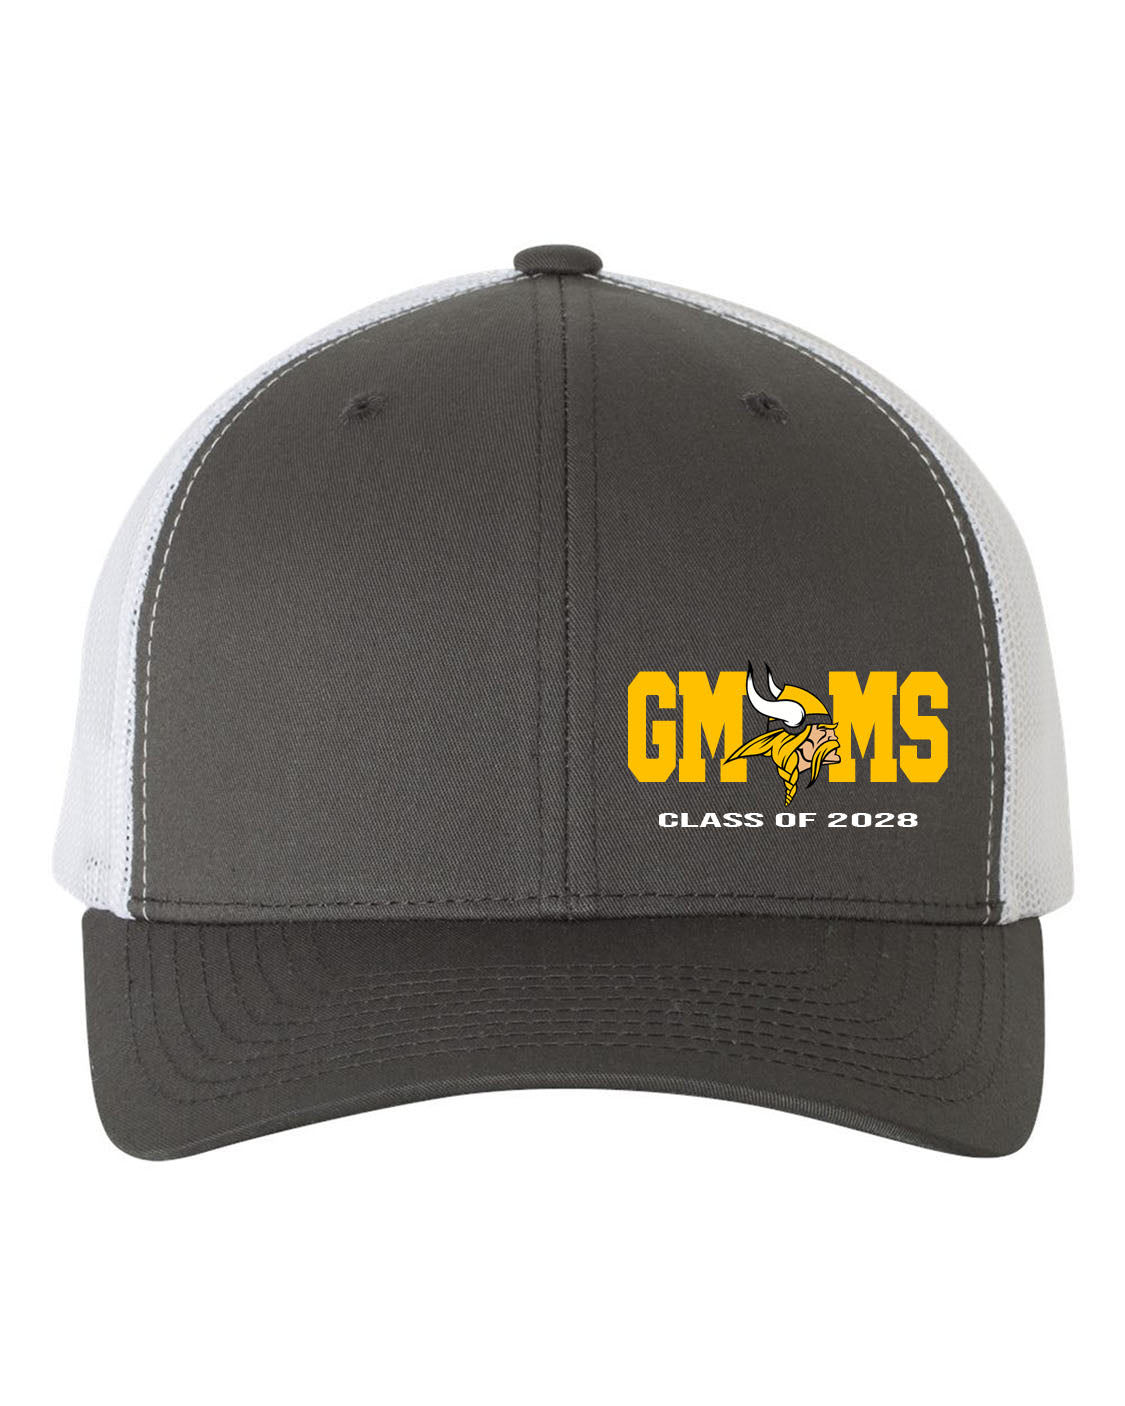 Glen Meadow Class of 2028 Trucker Hat